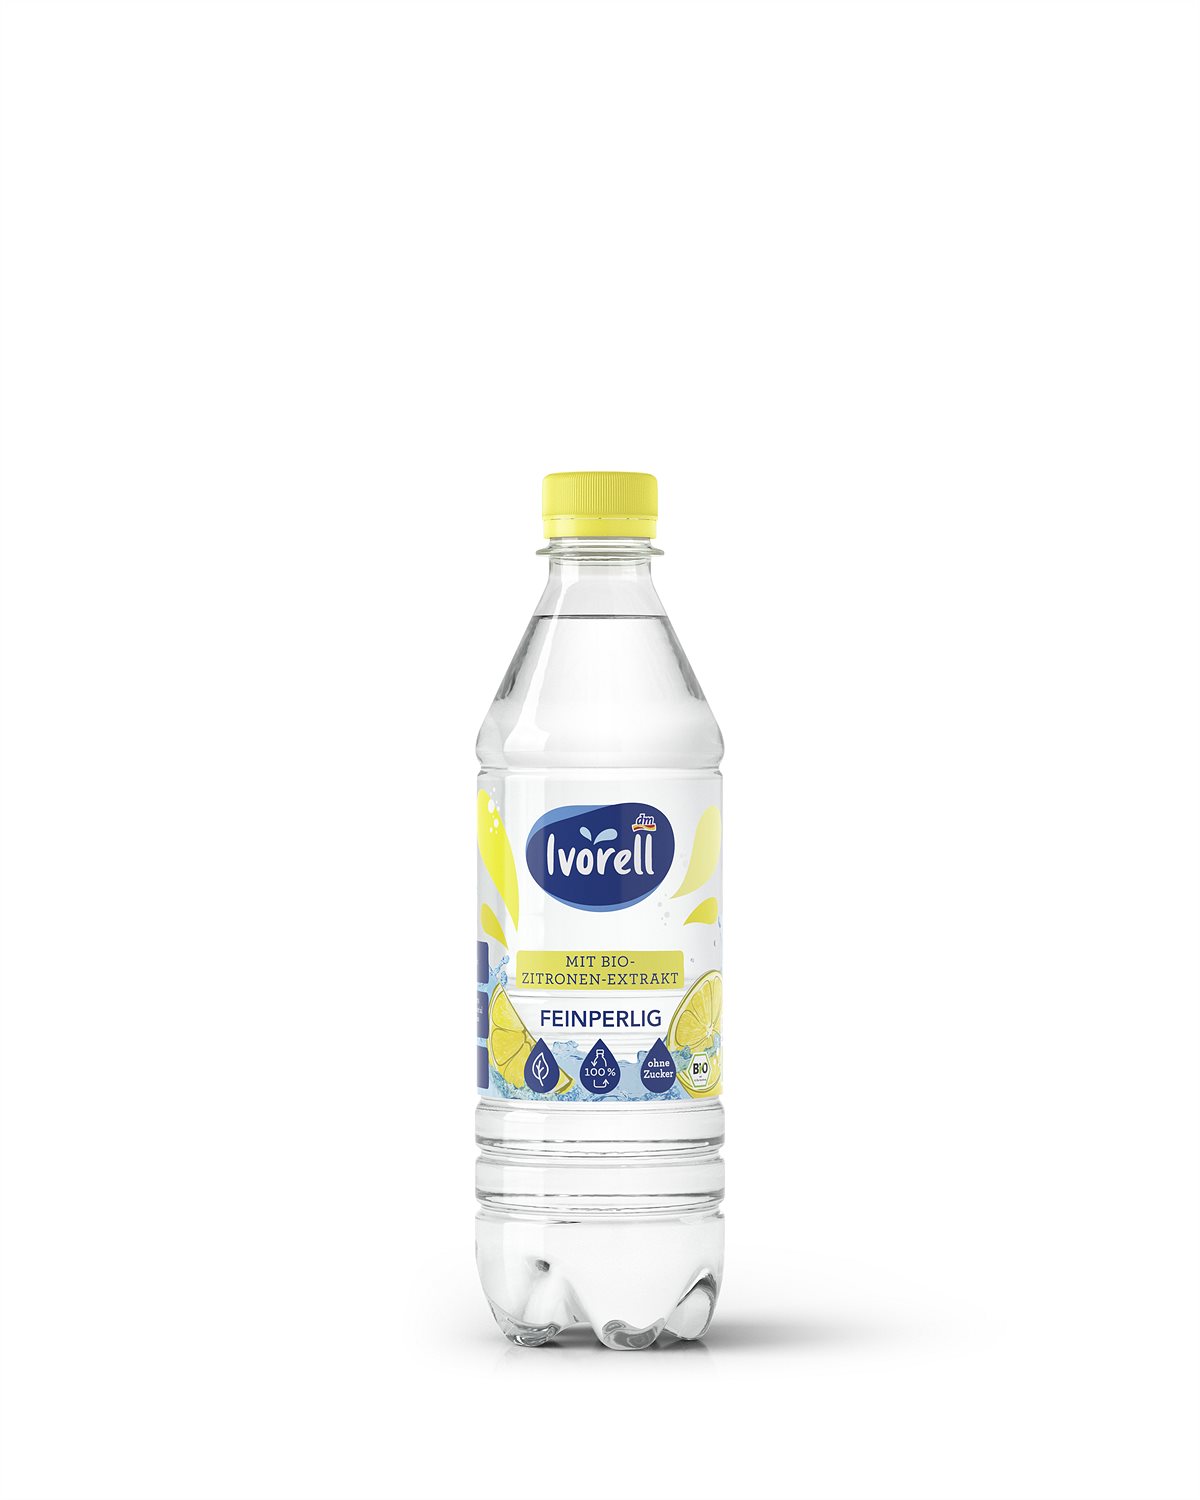 Mineralwasser mit Bio-Zitronen-Extrakt Feinperlig, 0,5 l 0,60 Euro